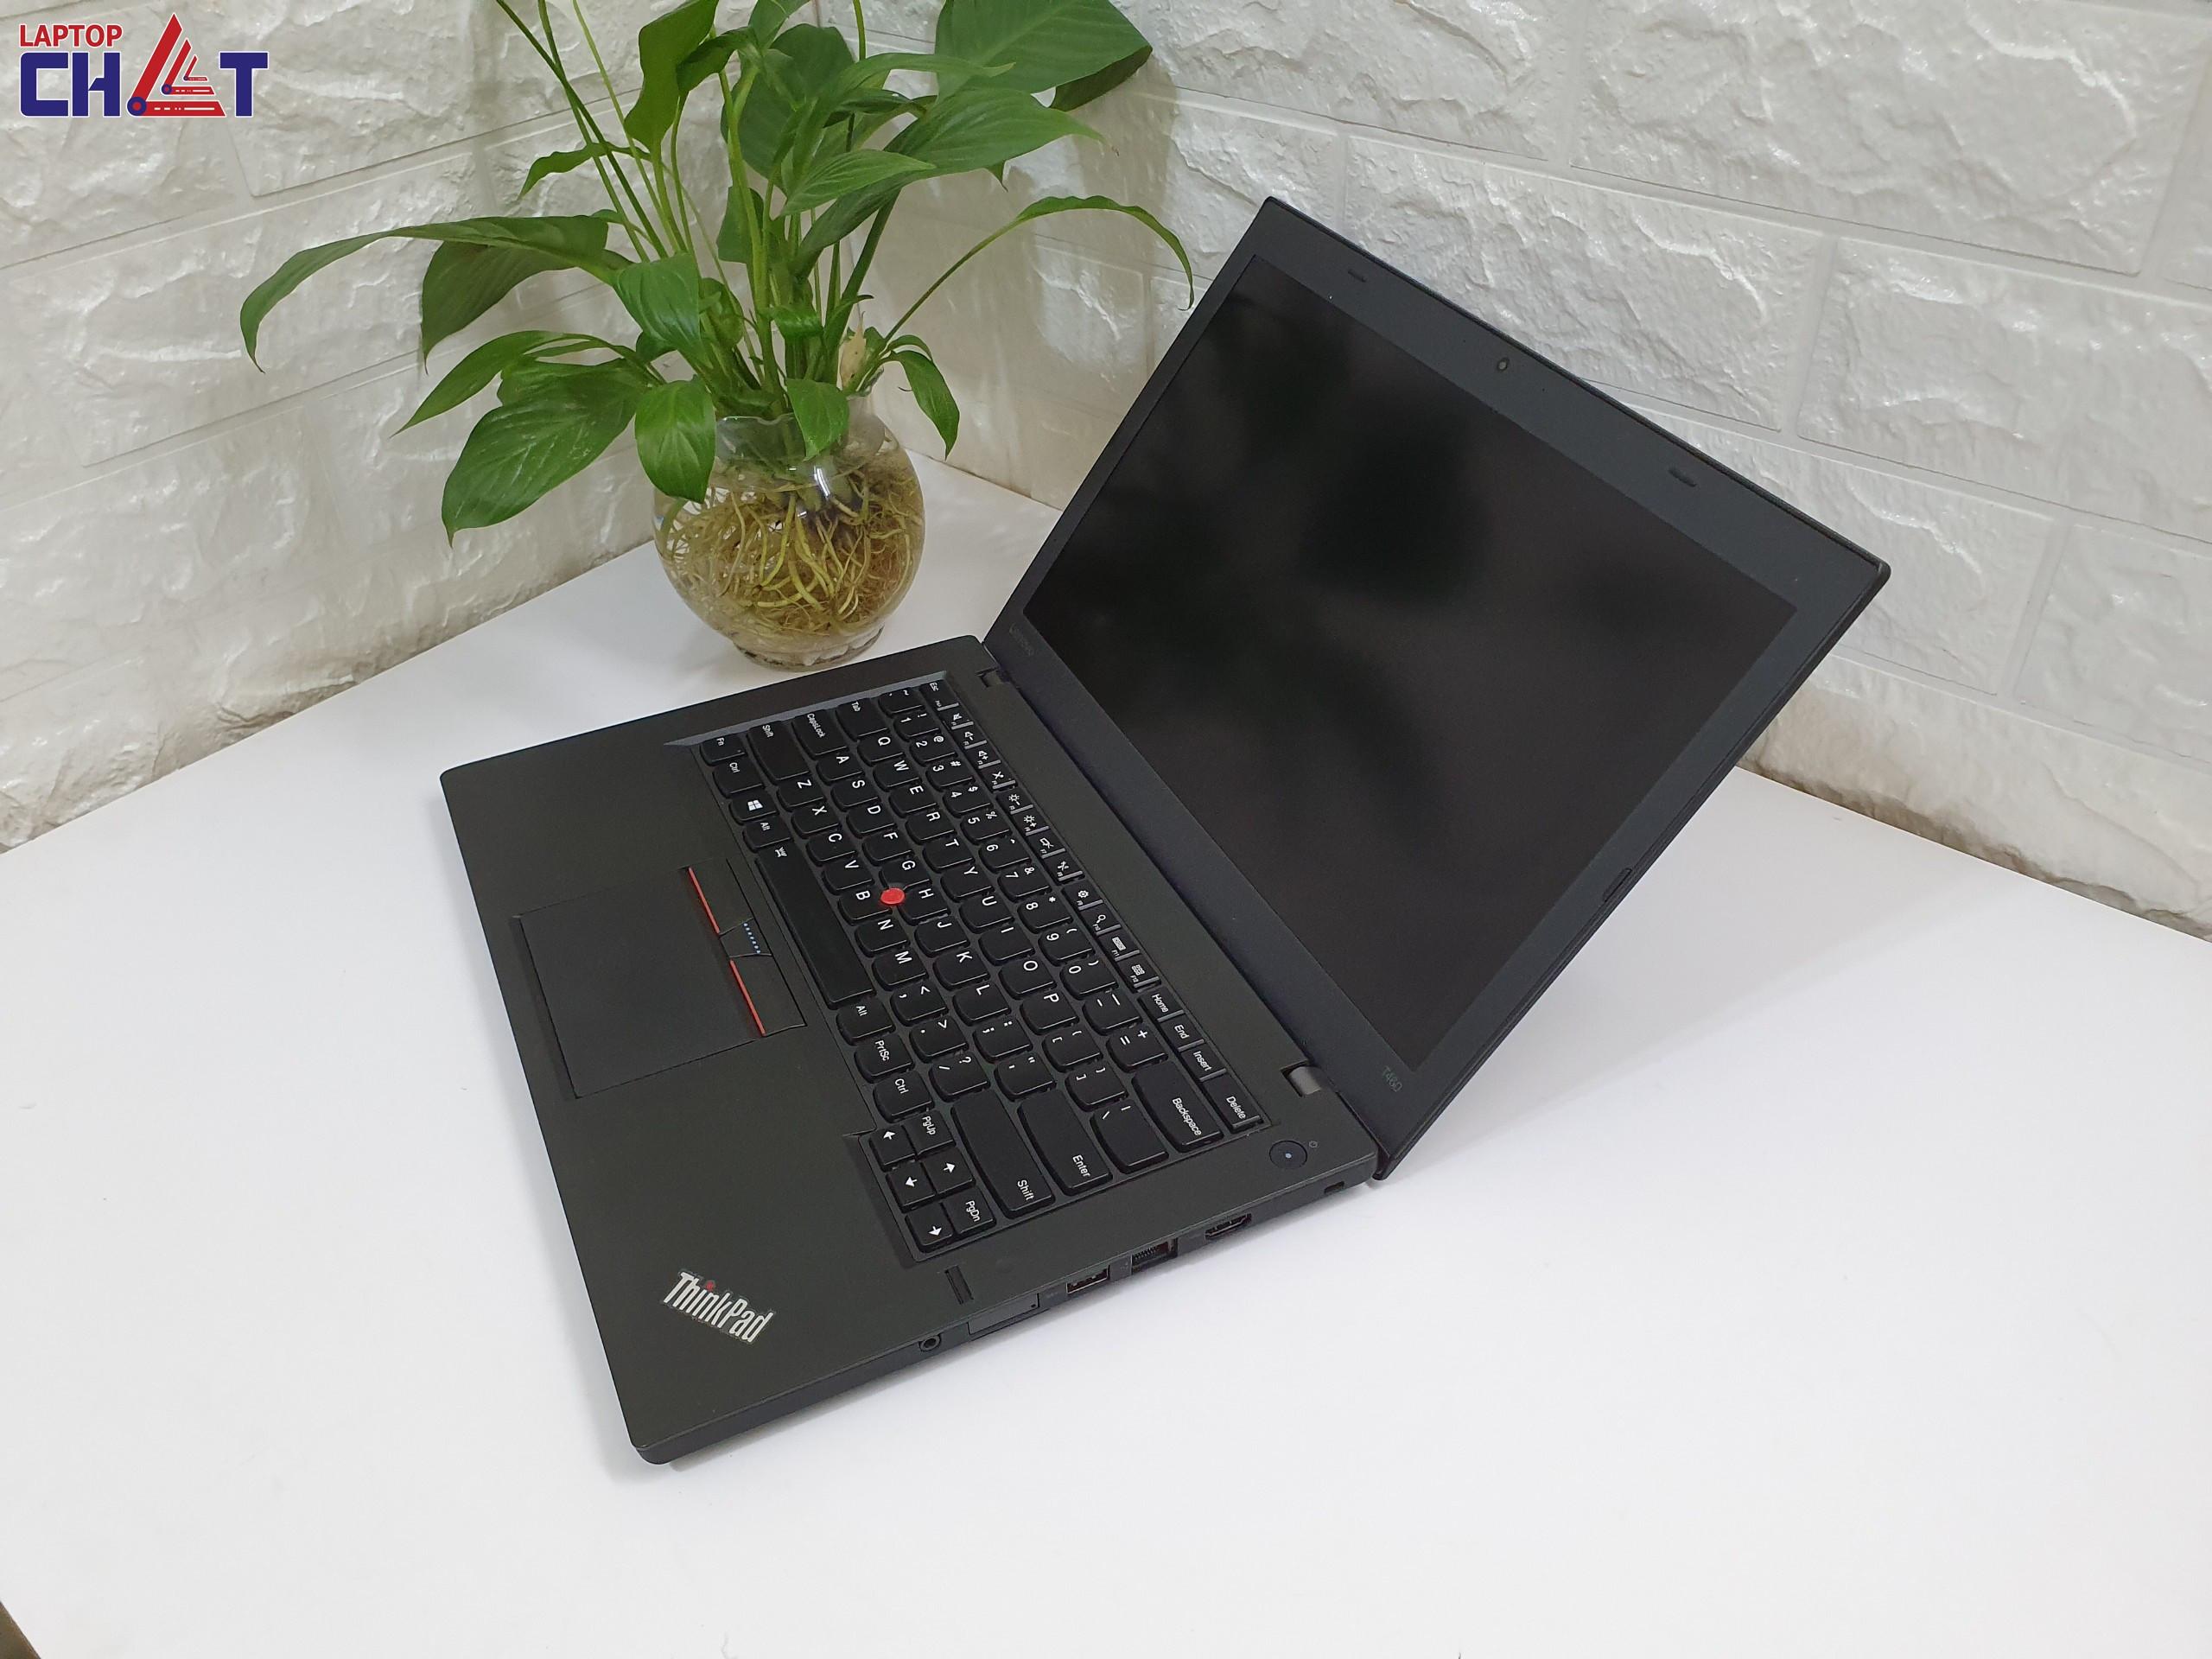 Lenovo Thinkpad T460 I7